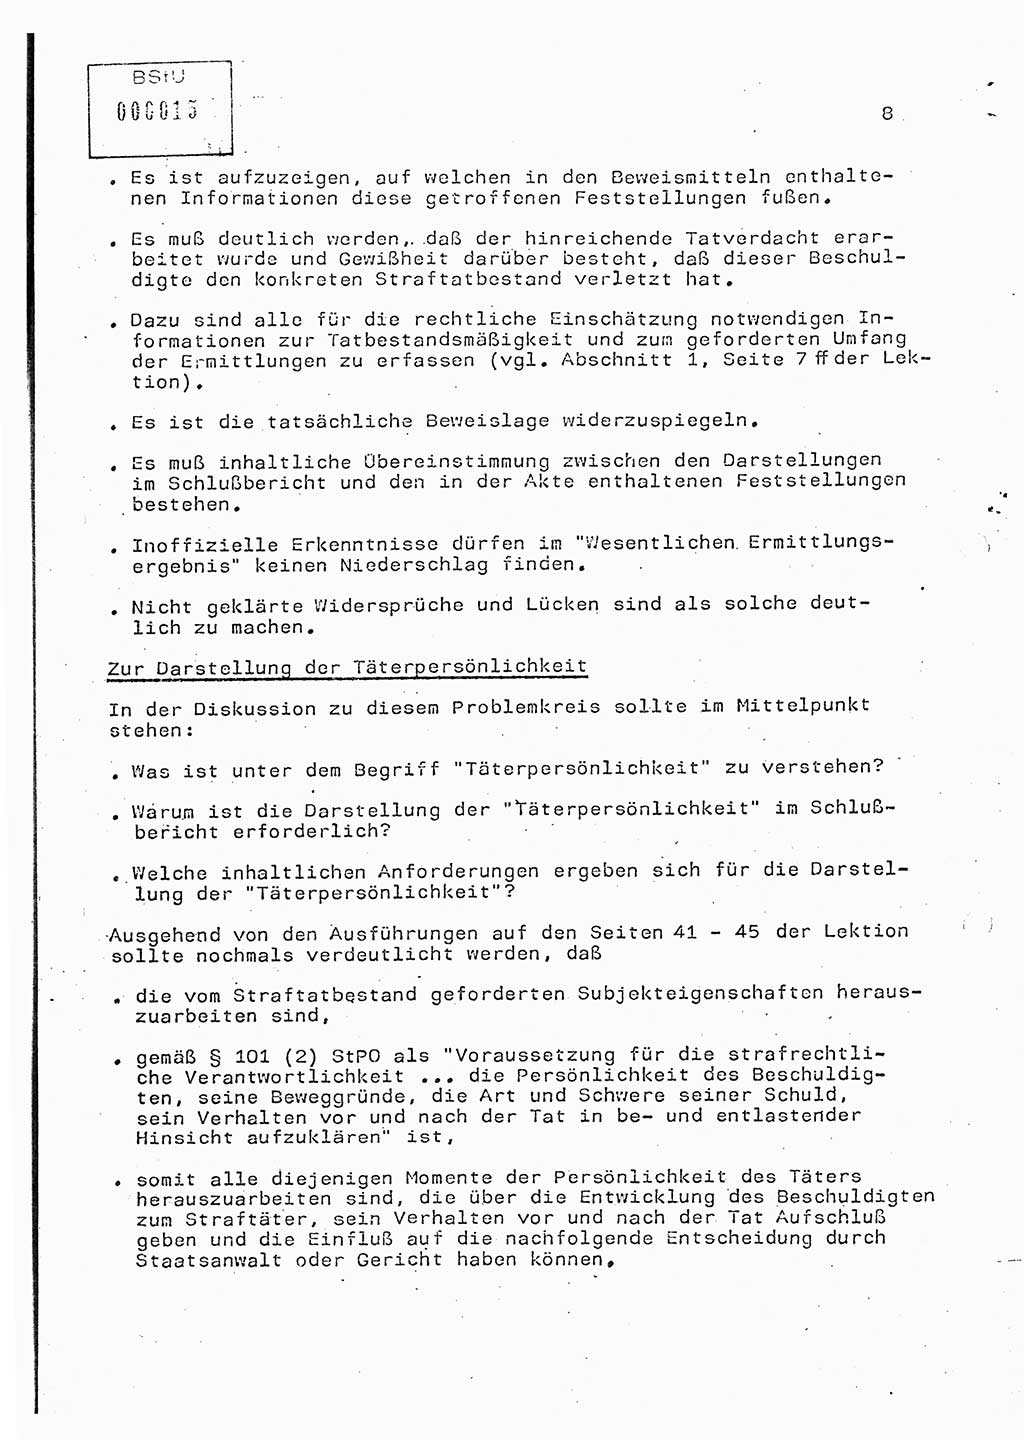 Rahmenseminarplan Lektion Ministerium für Staatssicherheit (MfS) [Deutsche Demokratische Republik (DDR)], Hauptabteilung (HA) Ⅸ, Vertrauliche Verschlußsache (VVS) o014-346/85, Berlin 1985, Seite 8 (R-Sem.-Pl. Lekt. MfS DDR HA Ⅸ VVS o014-346/85 1985, S. 8)